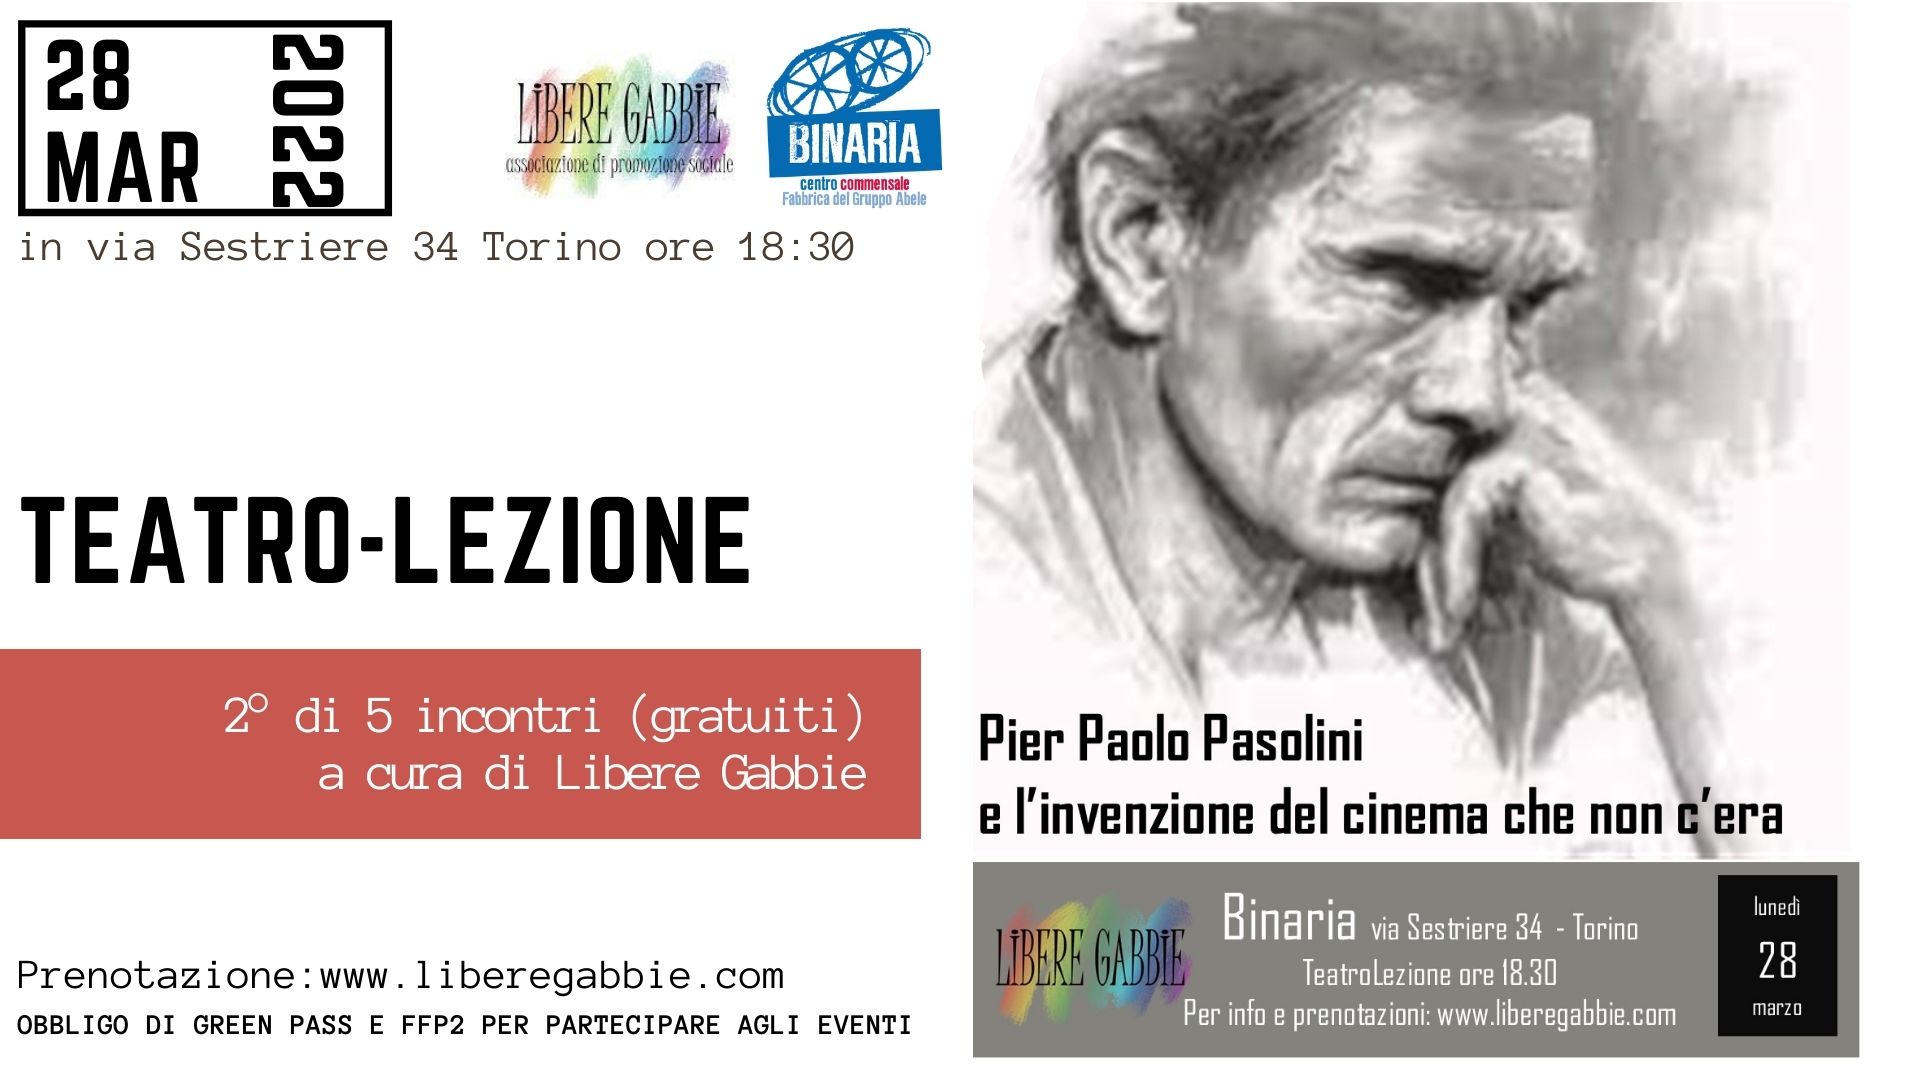 Pier Paolo Pasolini e l’invenzione del cinema che non c’era